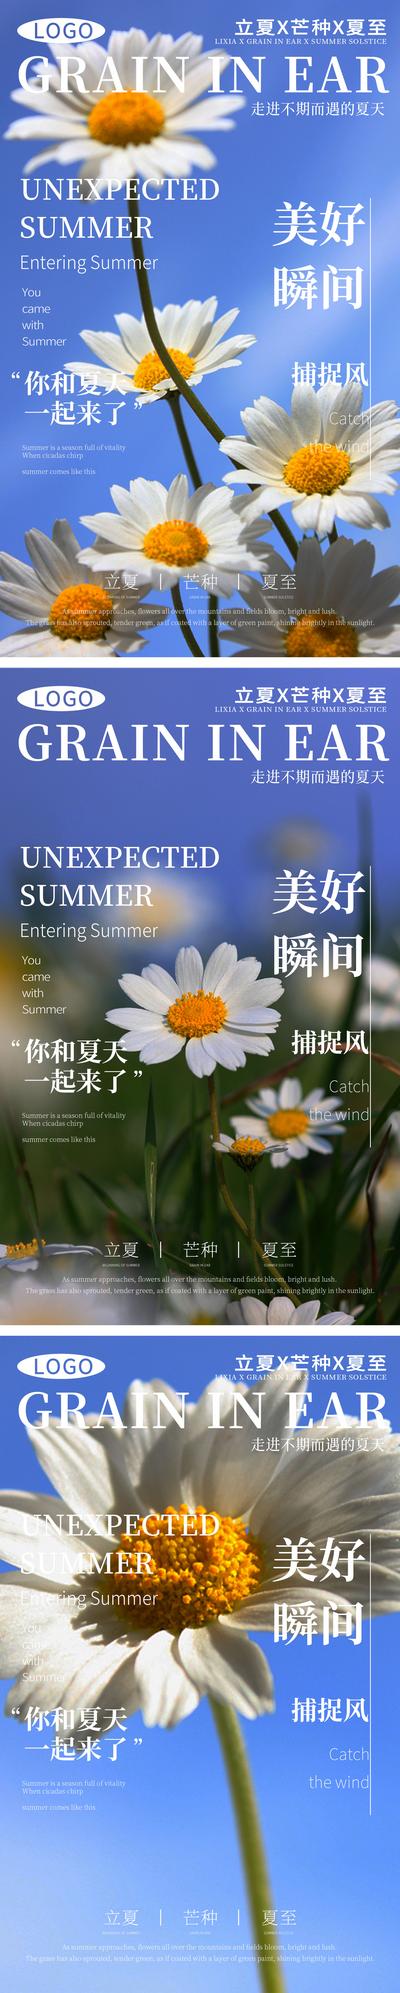 南门网 广告 海报 节气 立夏 系列 鲜花